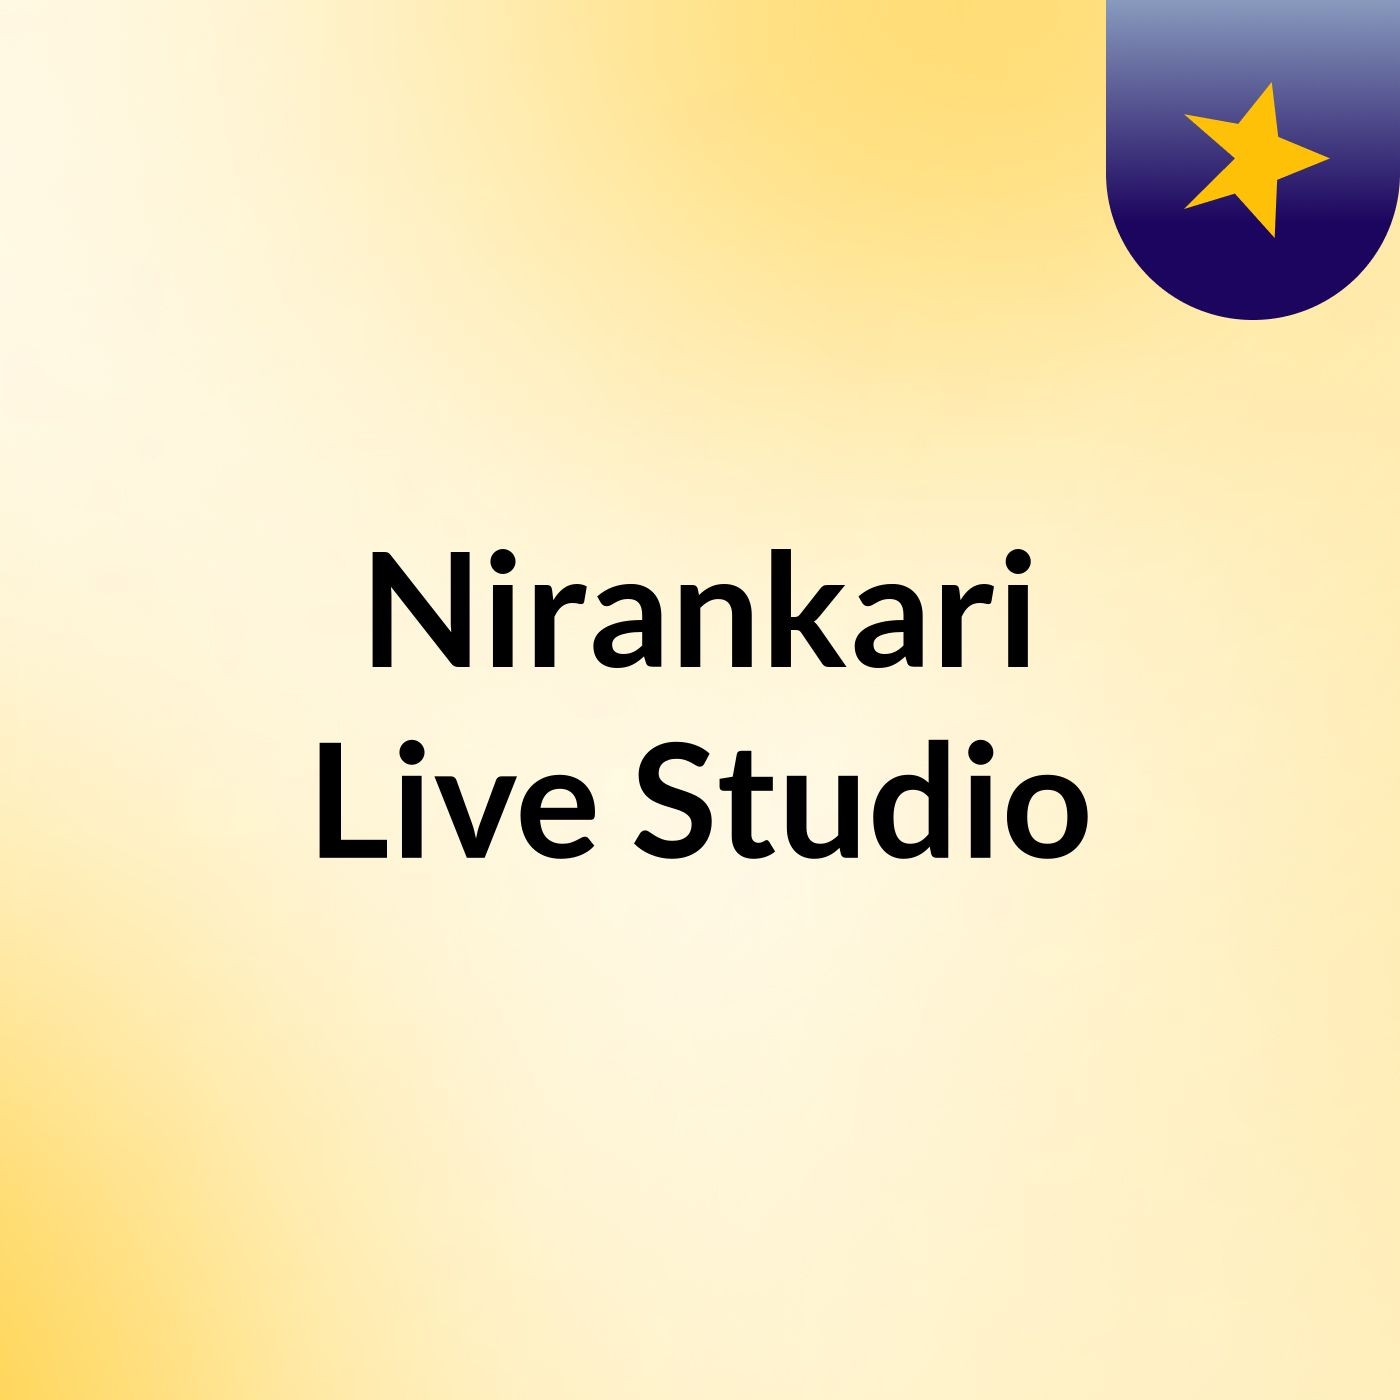 Episode 3 - Nirankari Live Studio